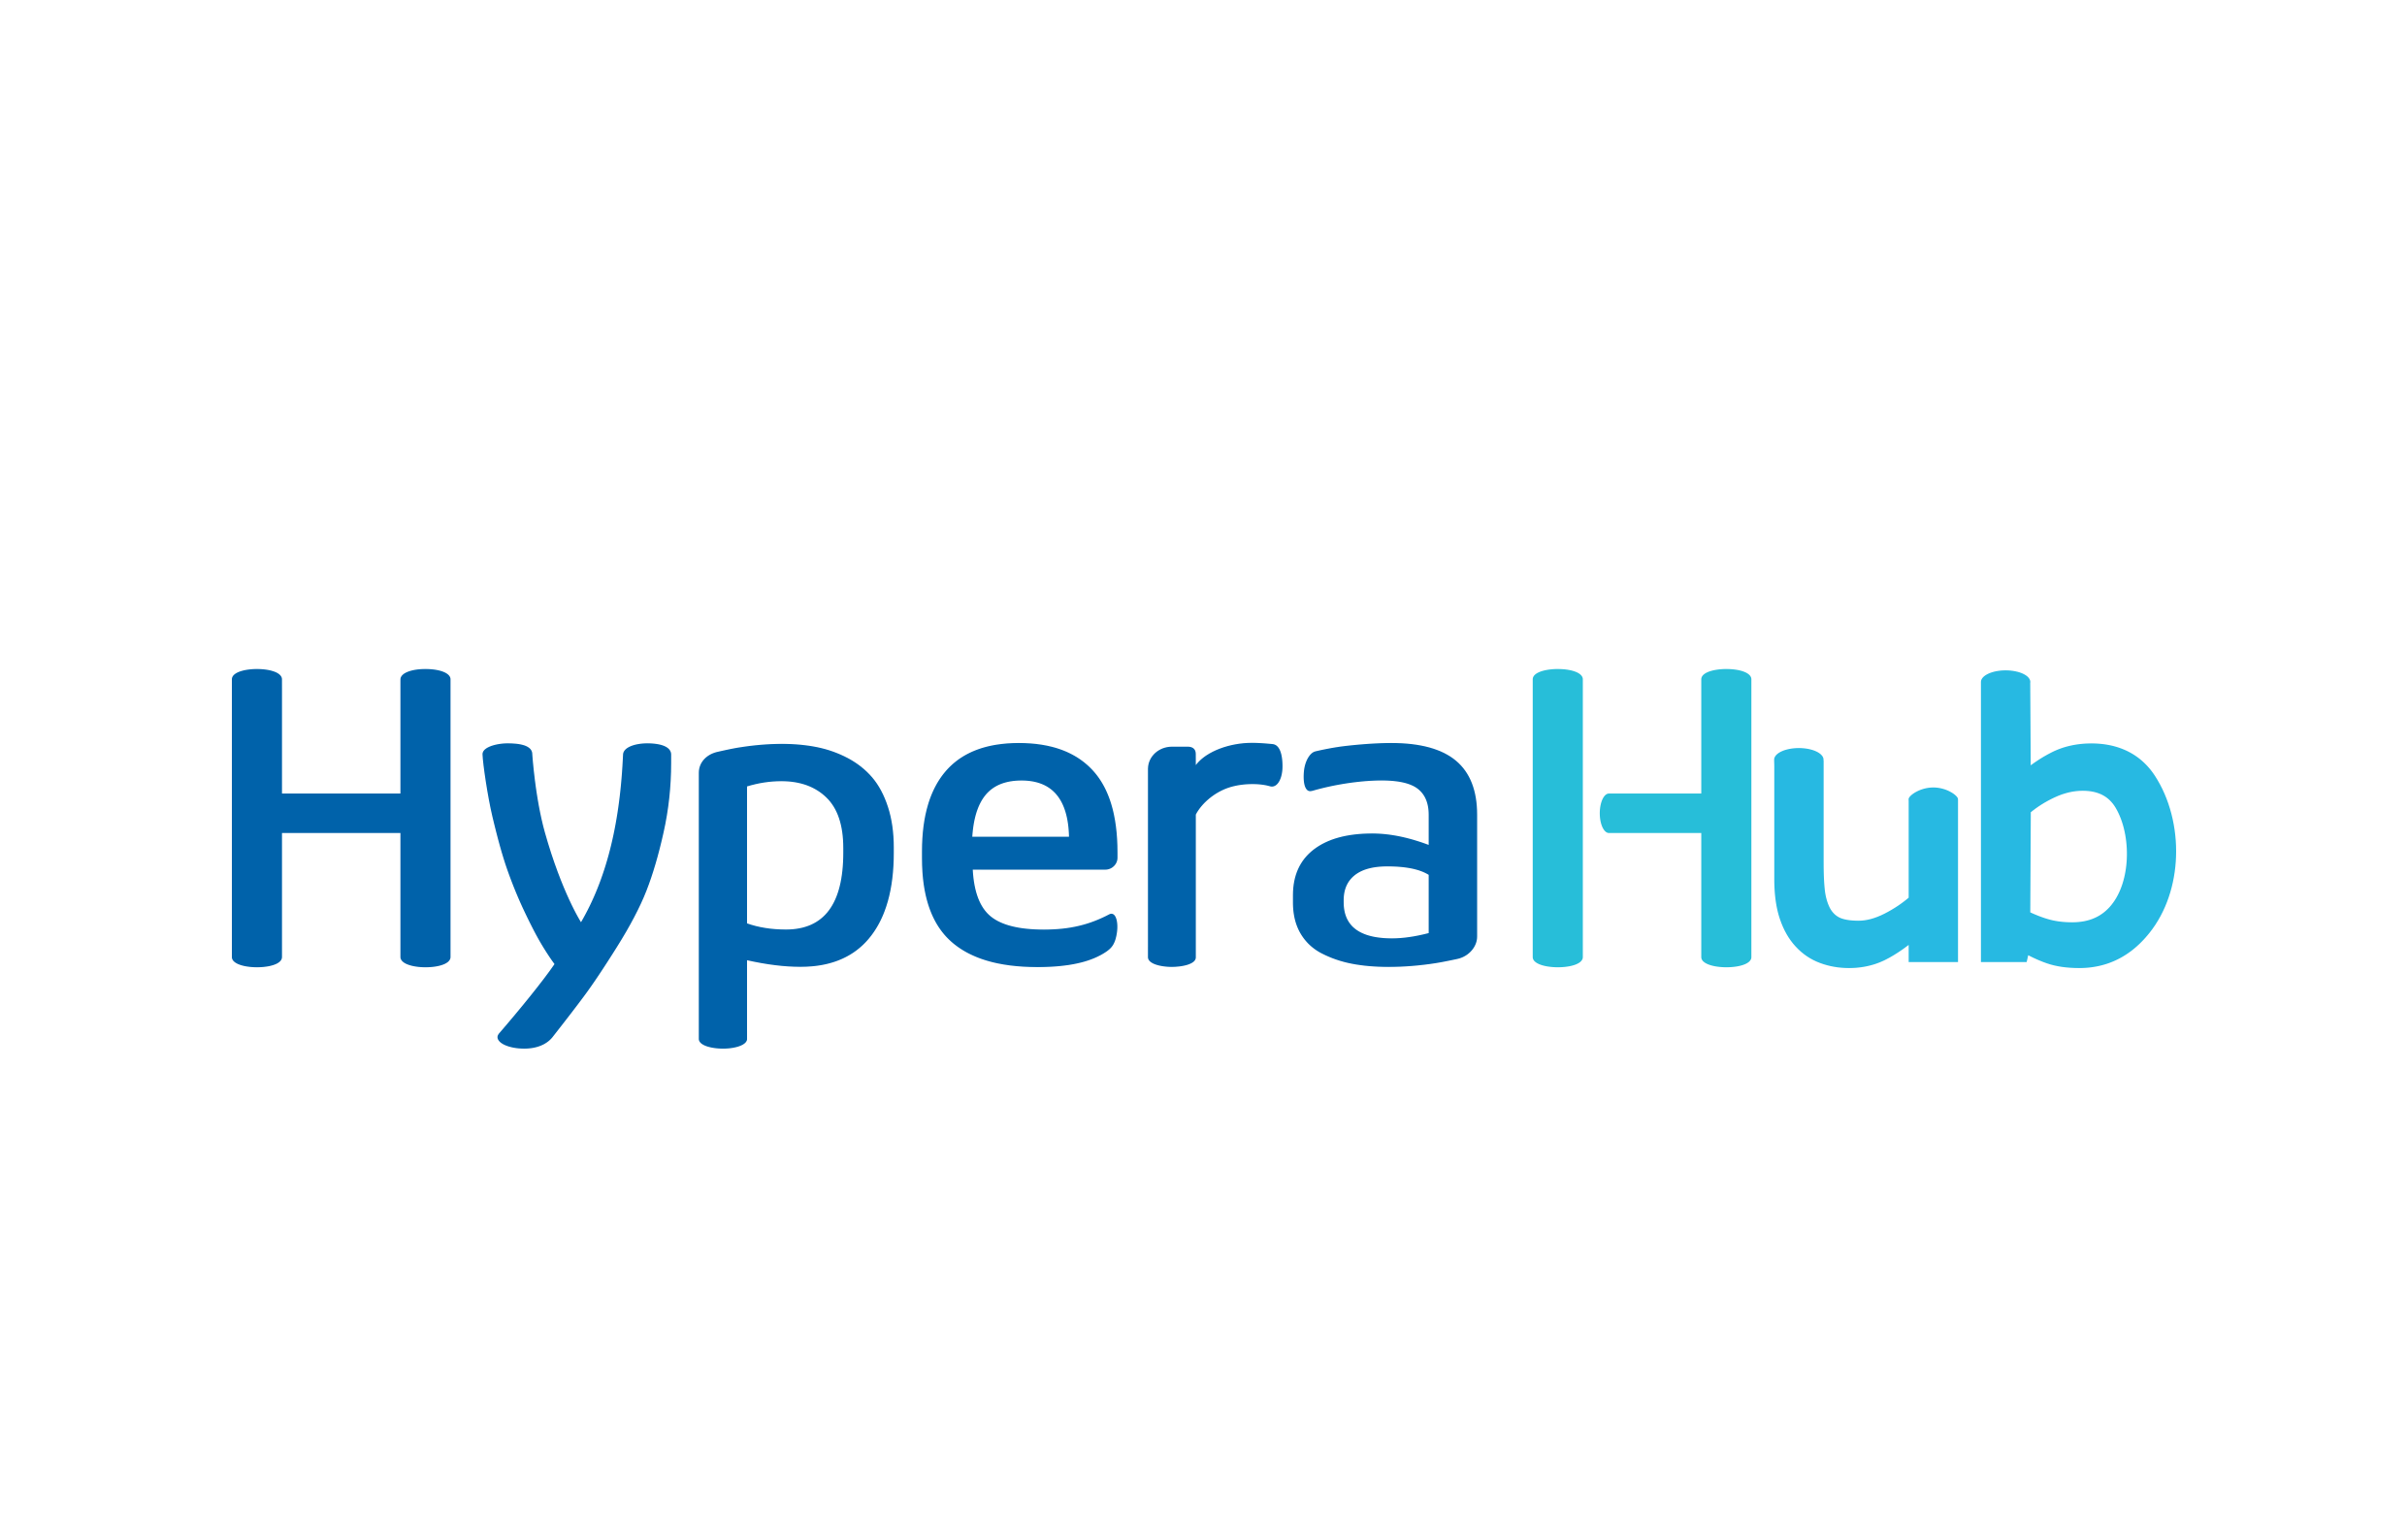 HyperaHub, programa de Inovação aberta da Hypera Pharma, abre 17 desafios para startups em 4 macrotemas